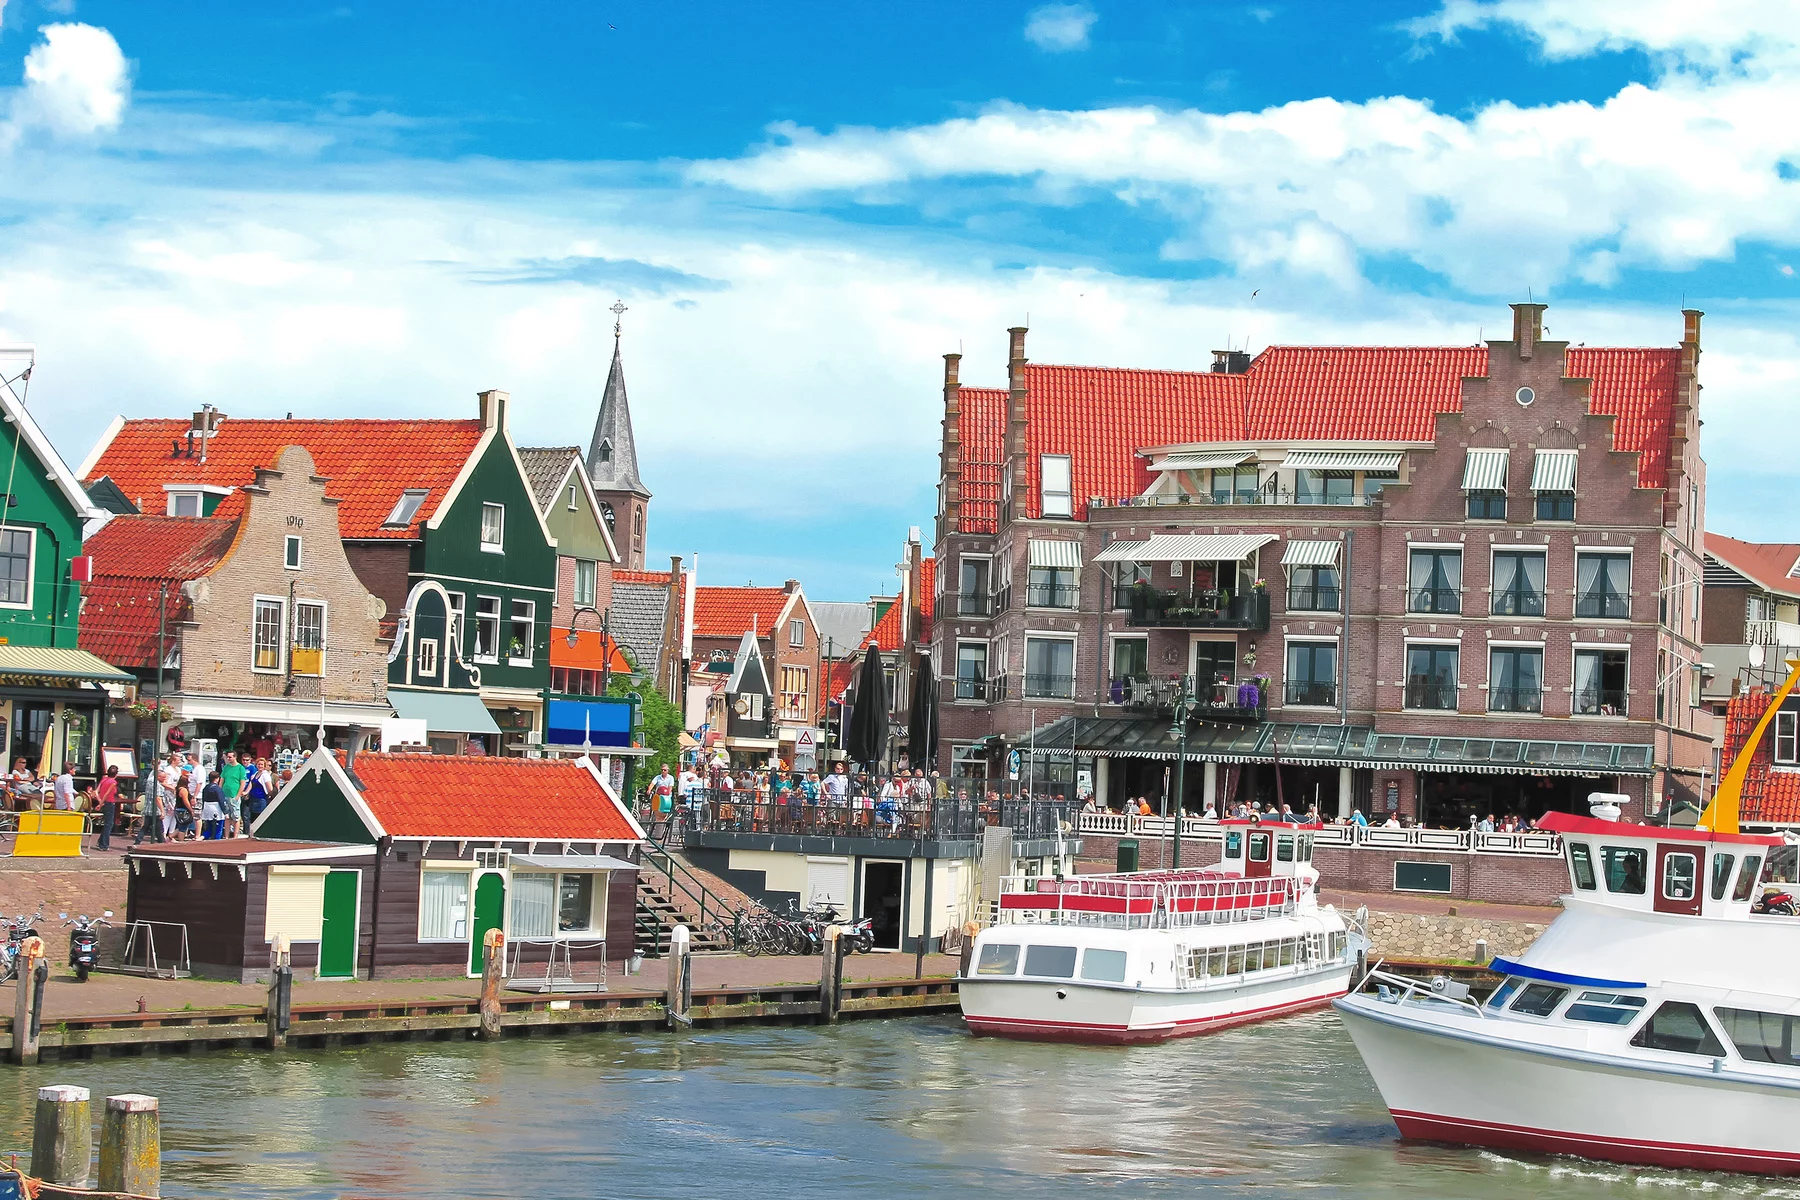 The harbor in Volendam